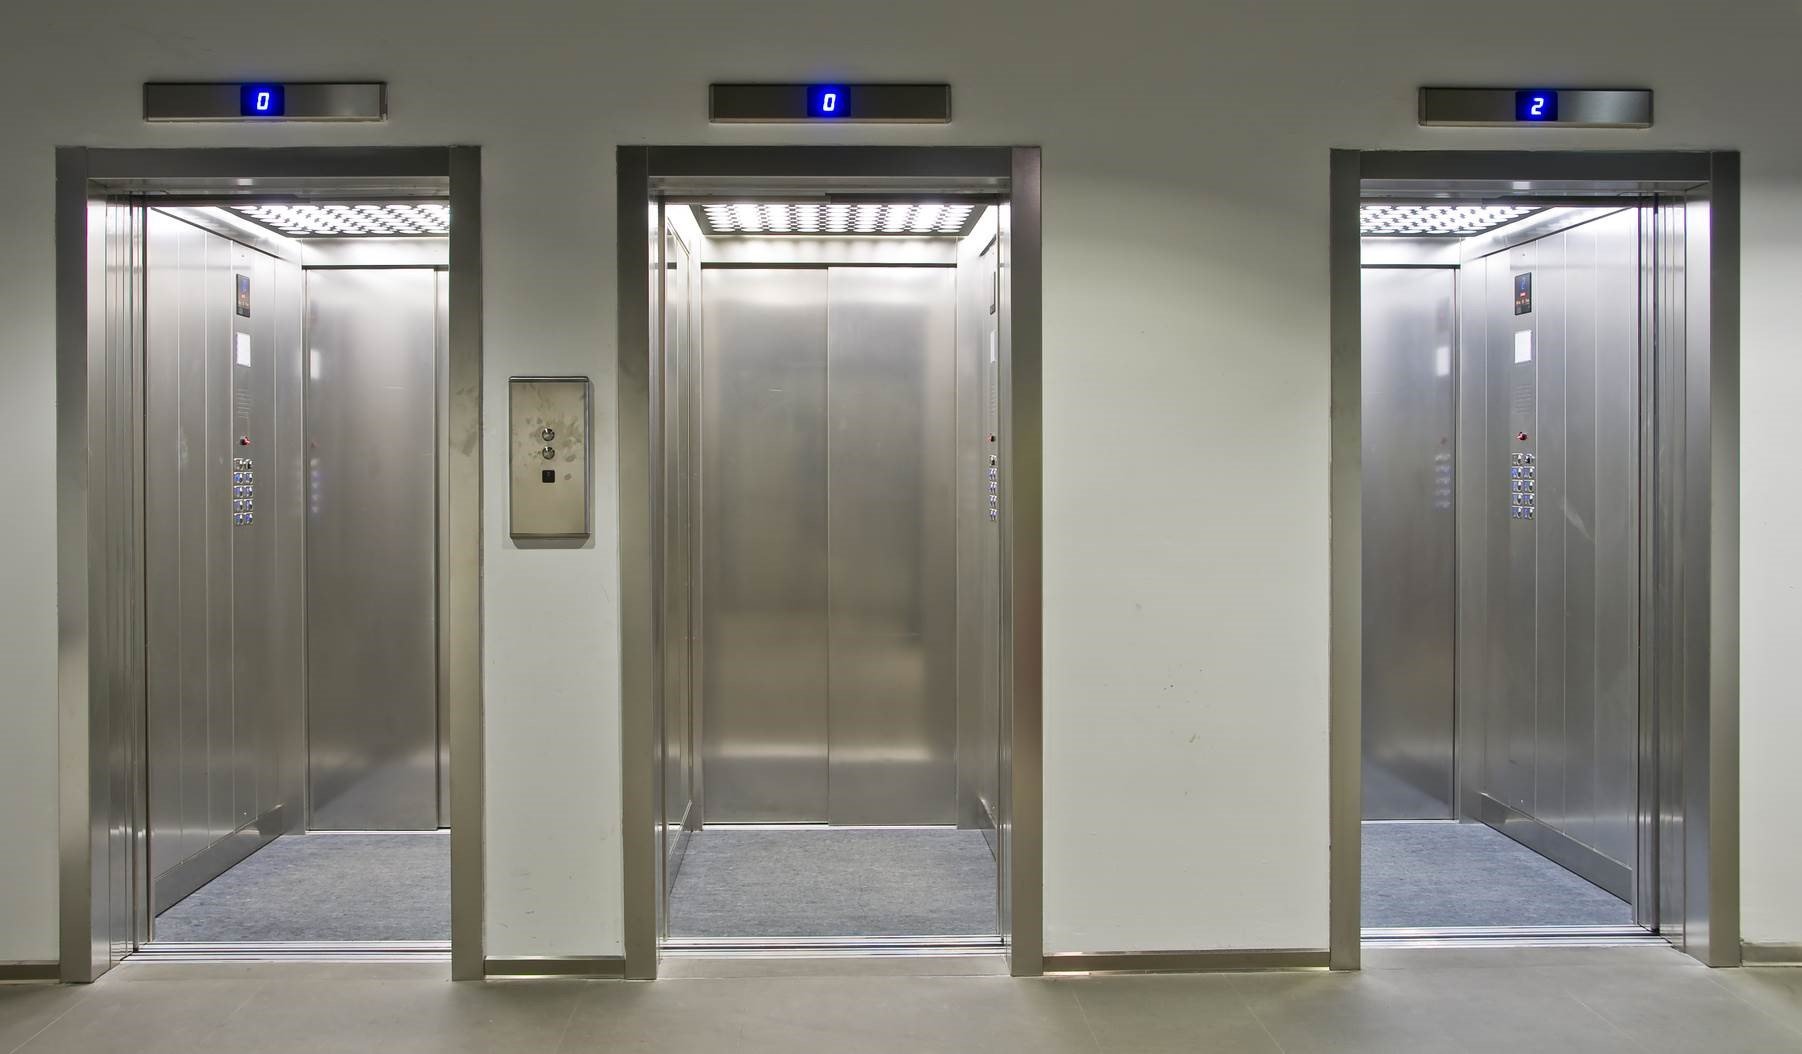 بهینه سازی در سیستم پشتیبانی آسانسور و ارائه خدمات فنی آسانسور